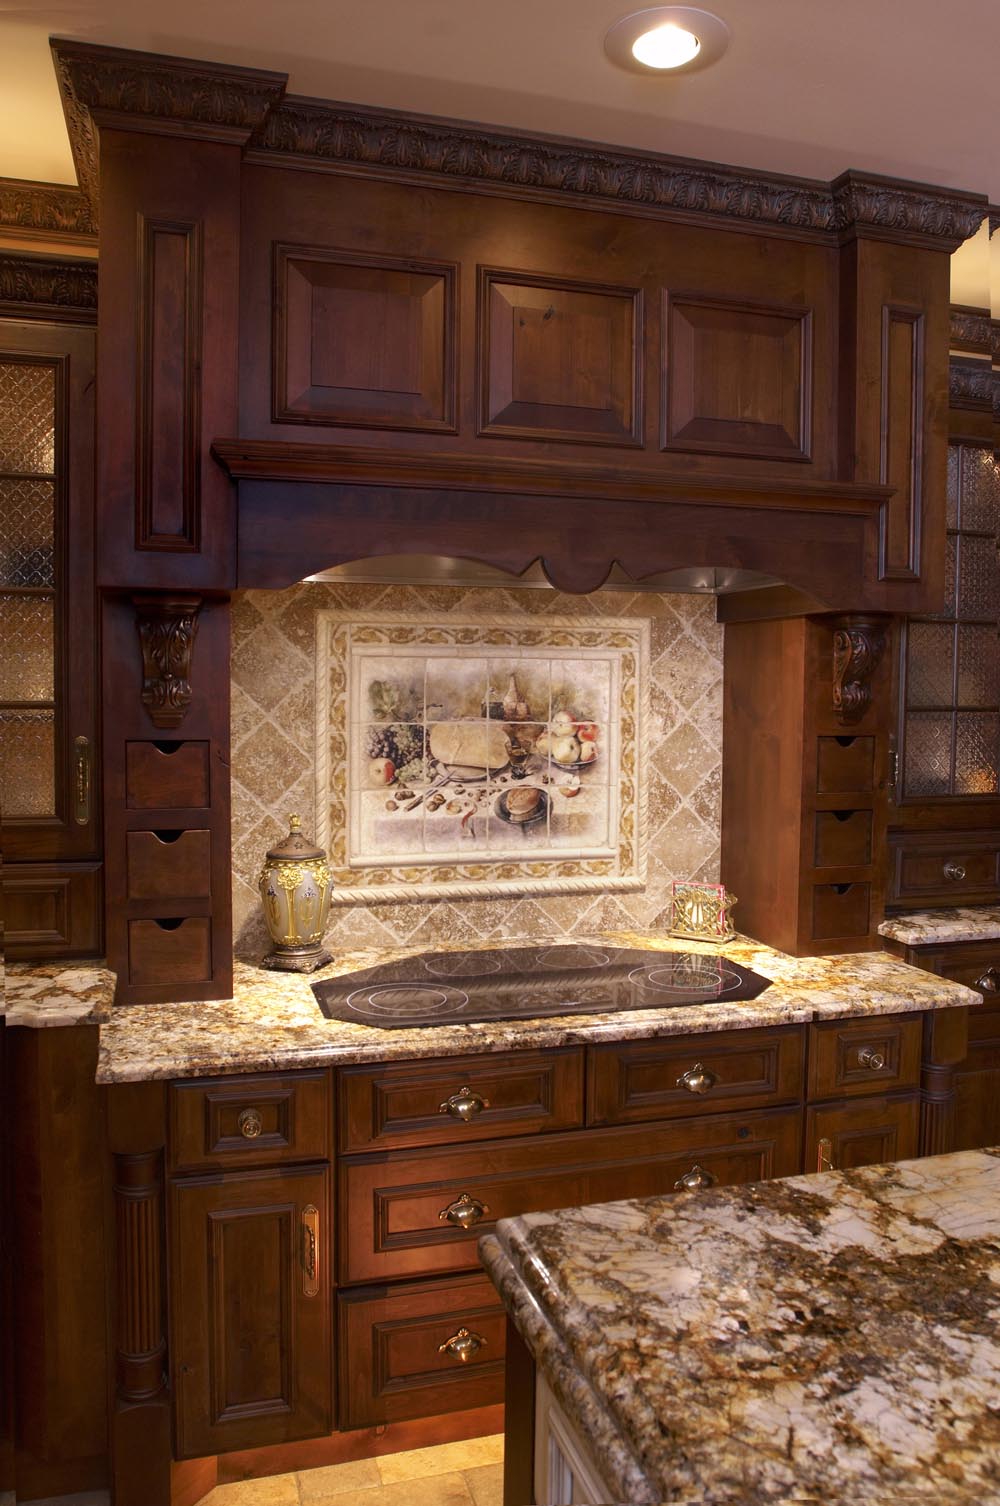 30 Amazing Kitchen Dark Cabinets Design Ideas - Decoration ...